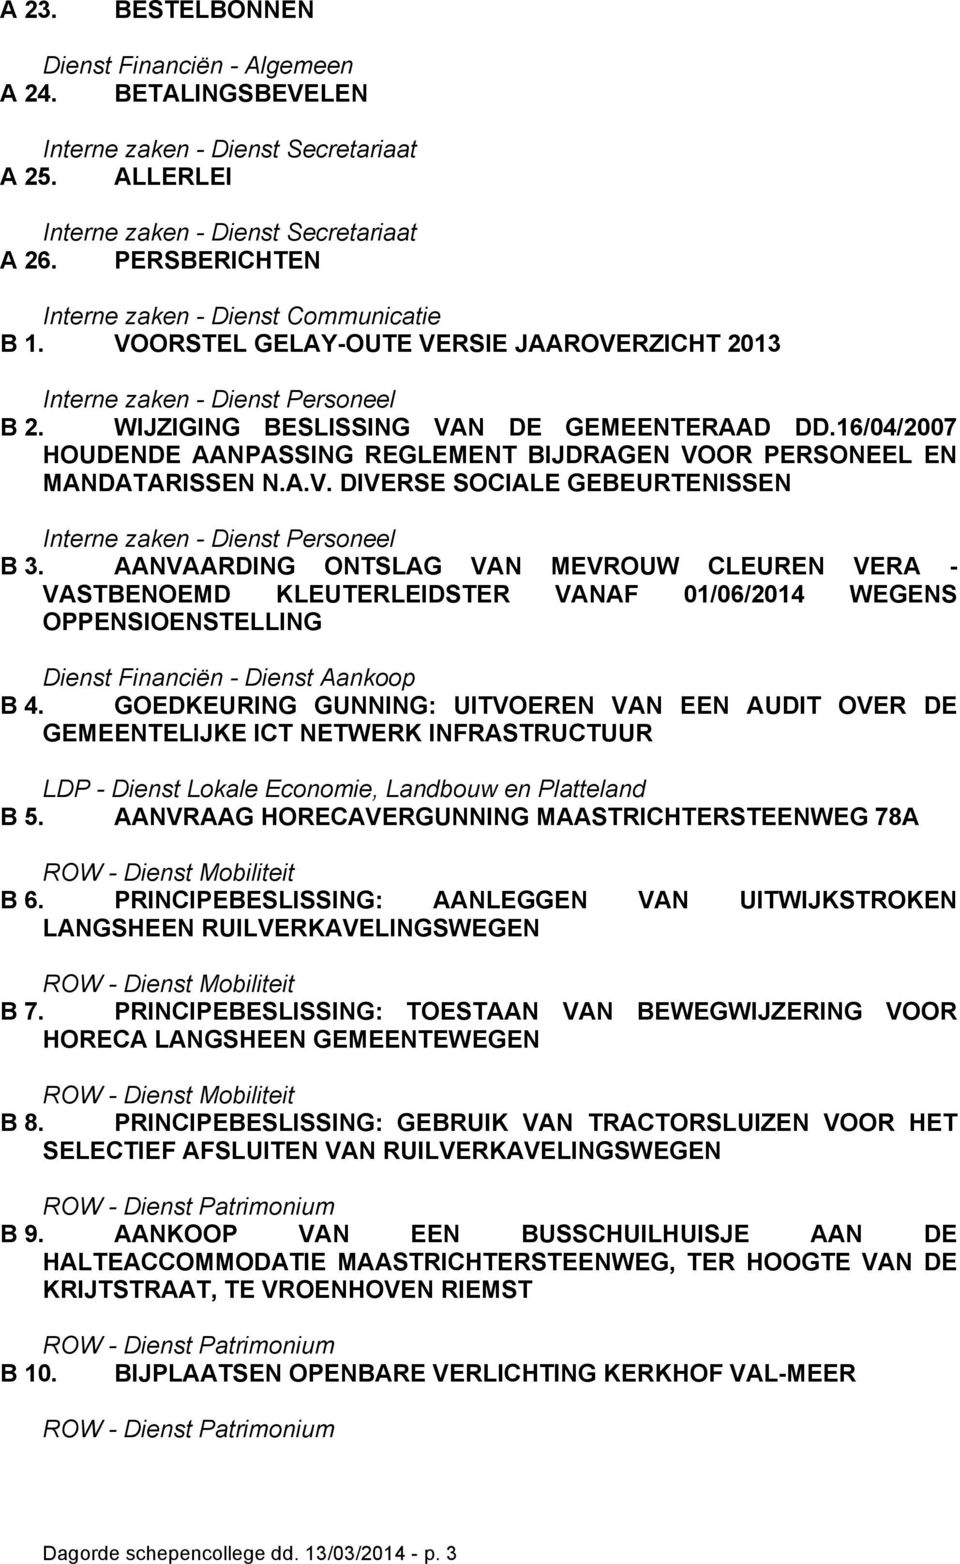 AANVAARDING ONTSLAG VAN MEVROUW CLEUREN VERA - VASTBENOEMD KLEUTERLEIDSTER VANAF 01/06/2014 WEGENS OPPENSIOENSTELLING B 4.